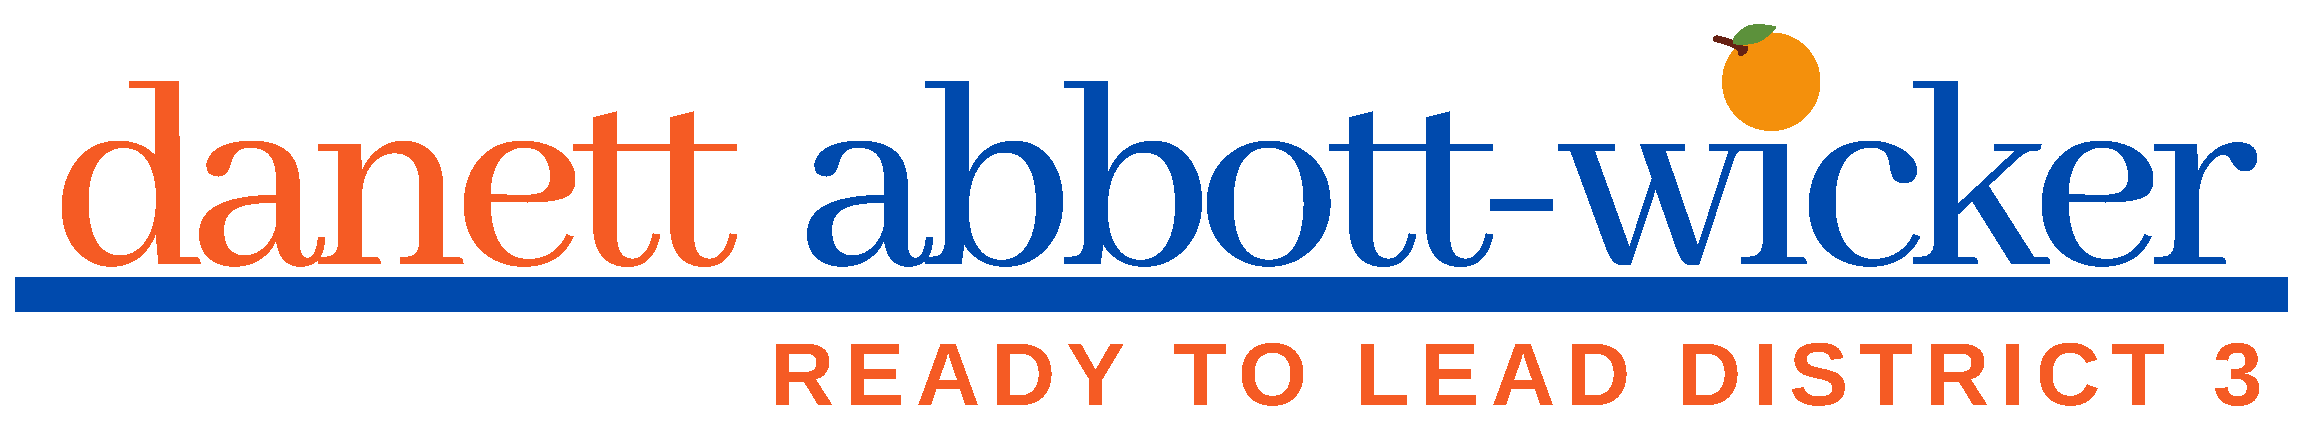 Danett Abbott-Wicker logo